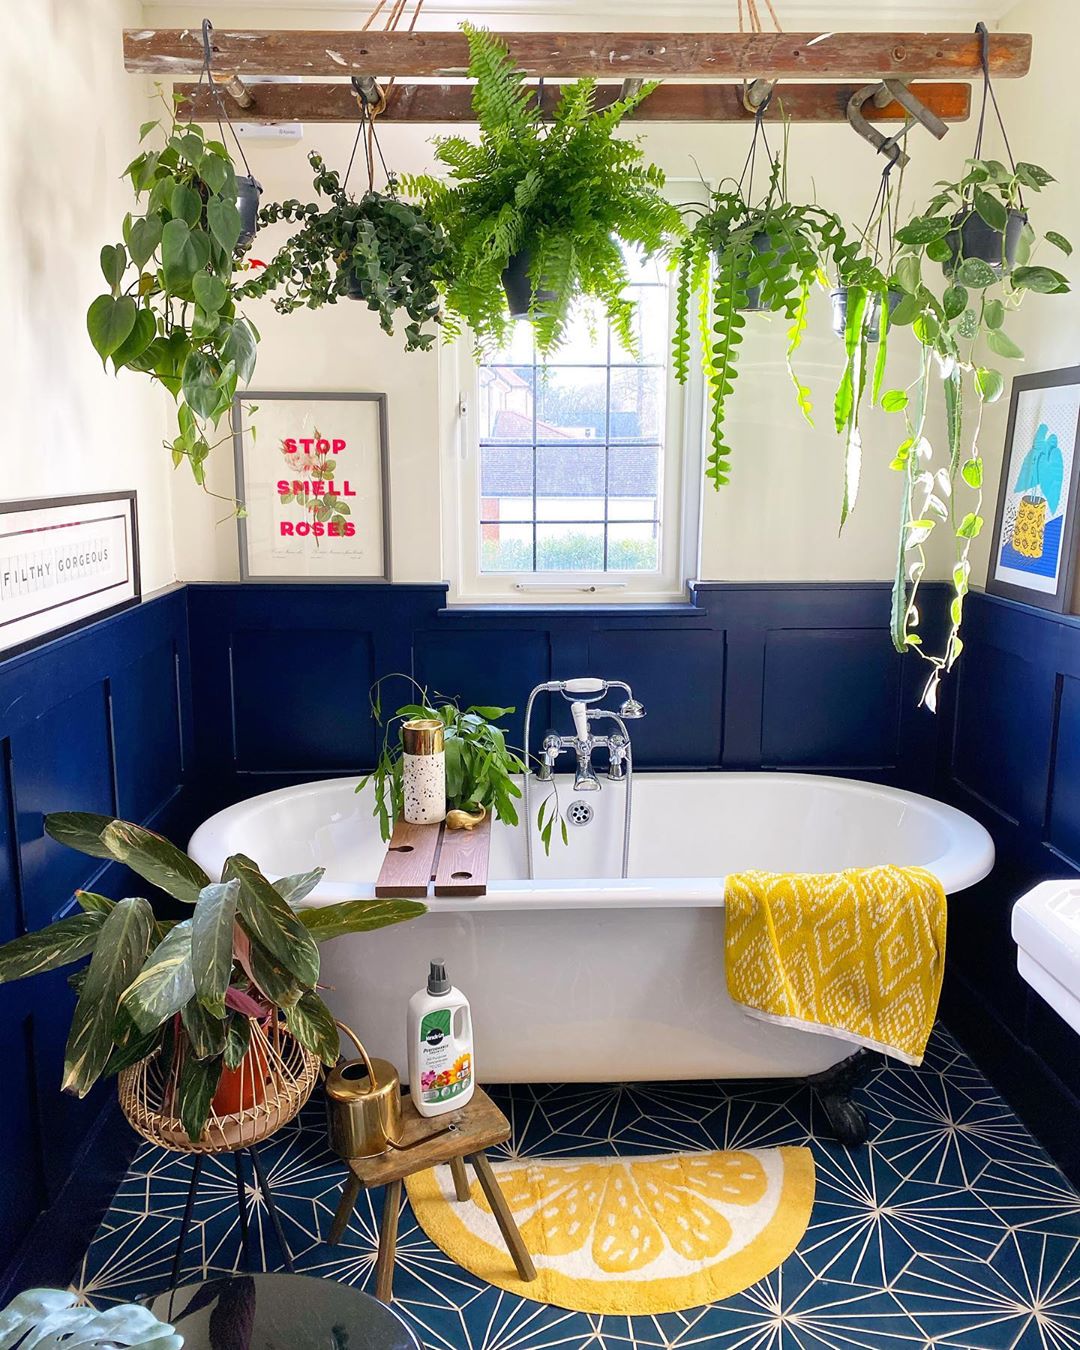 Baño rústico: 60 ideas que aportan sencillez y encanto a tu hogar